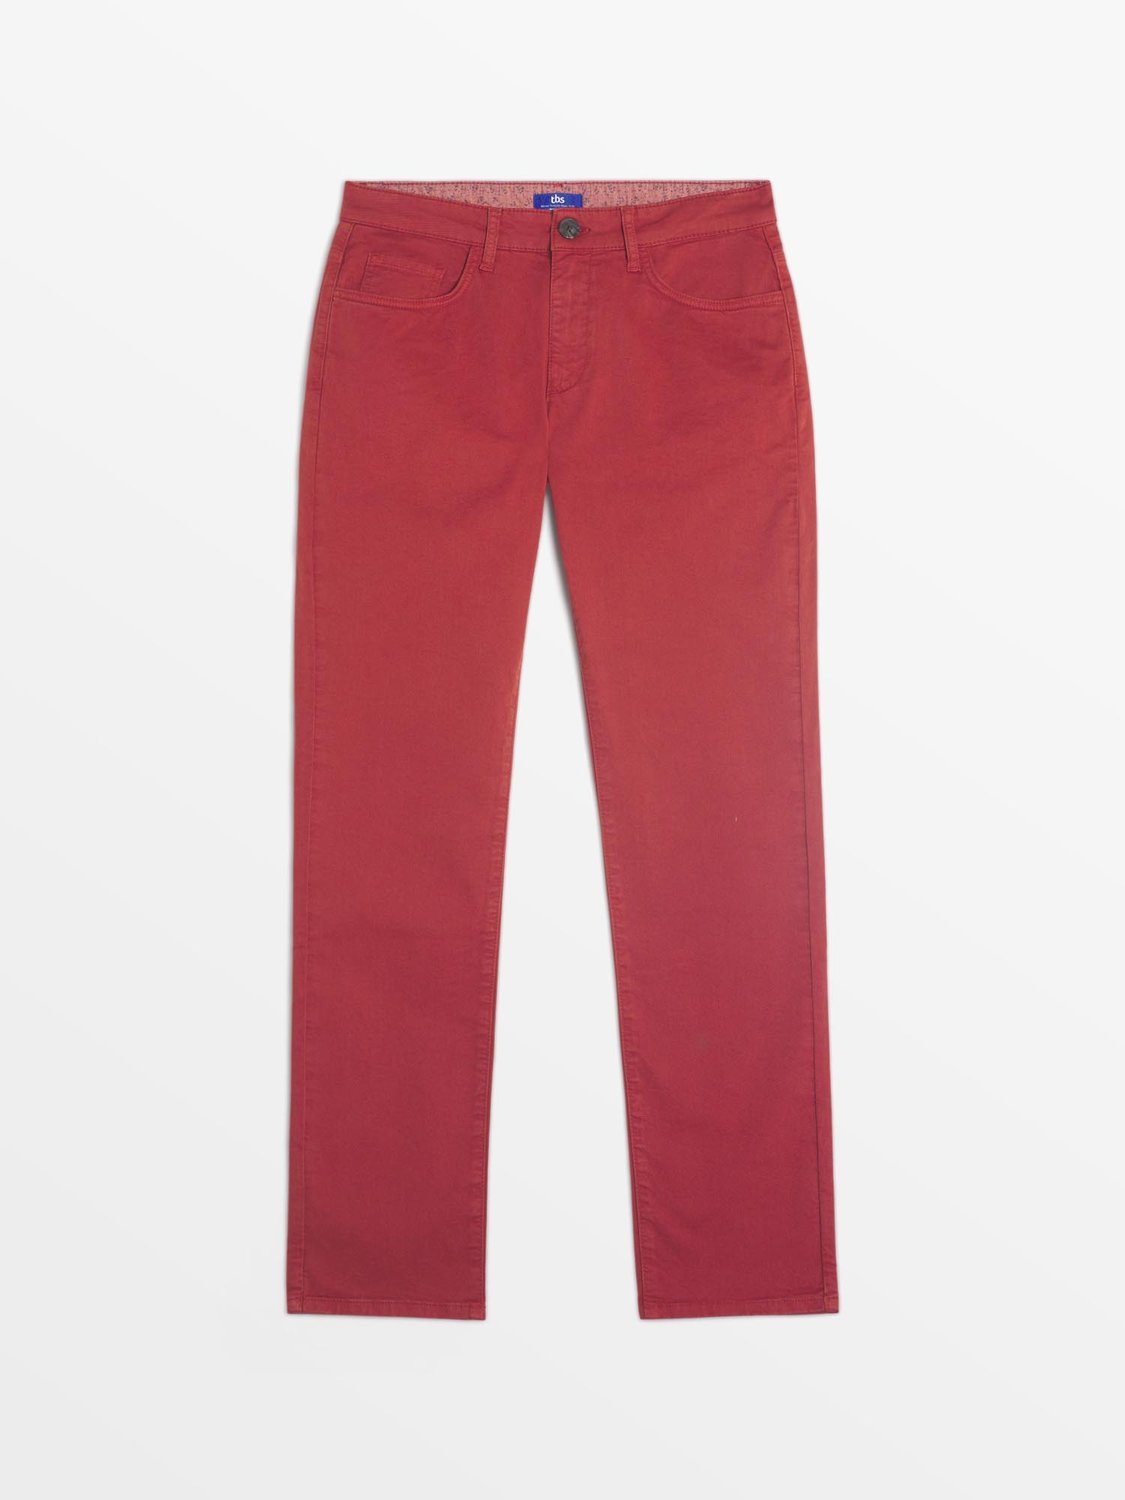 Pantalon Homme Coton Rouge